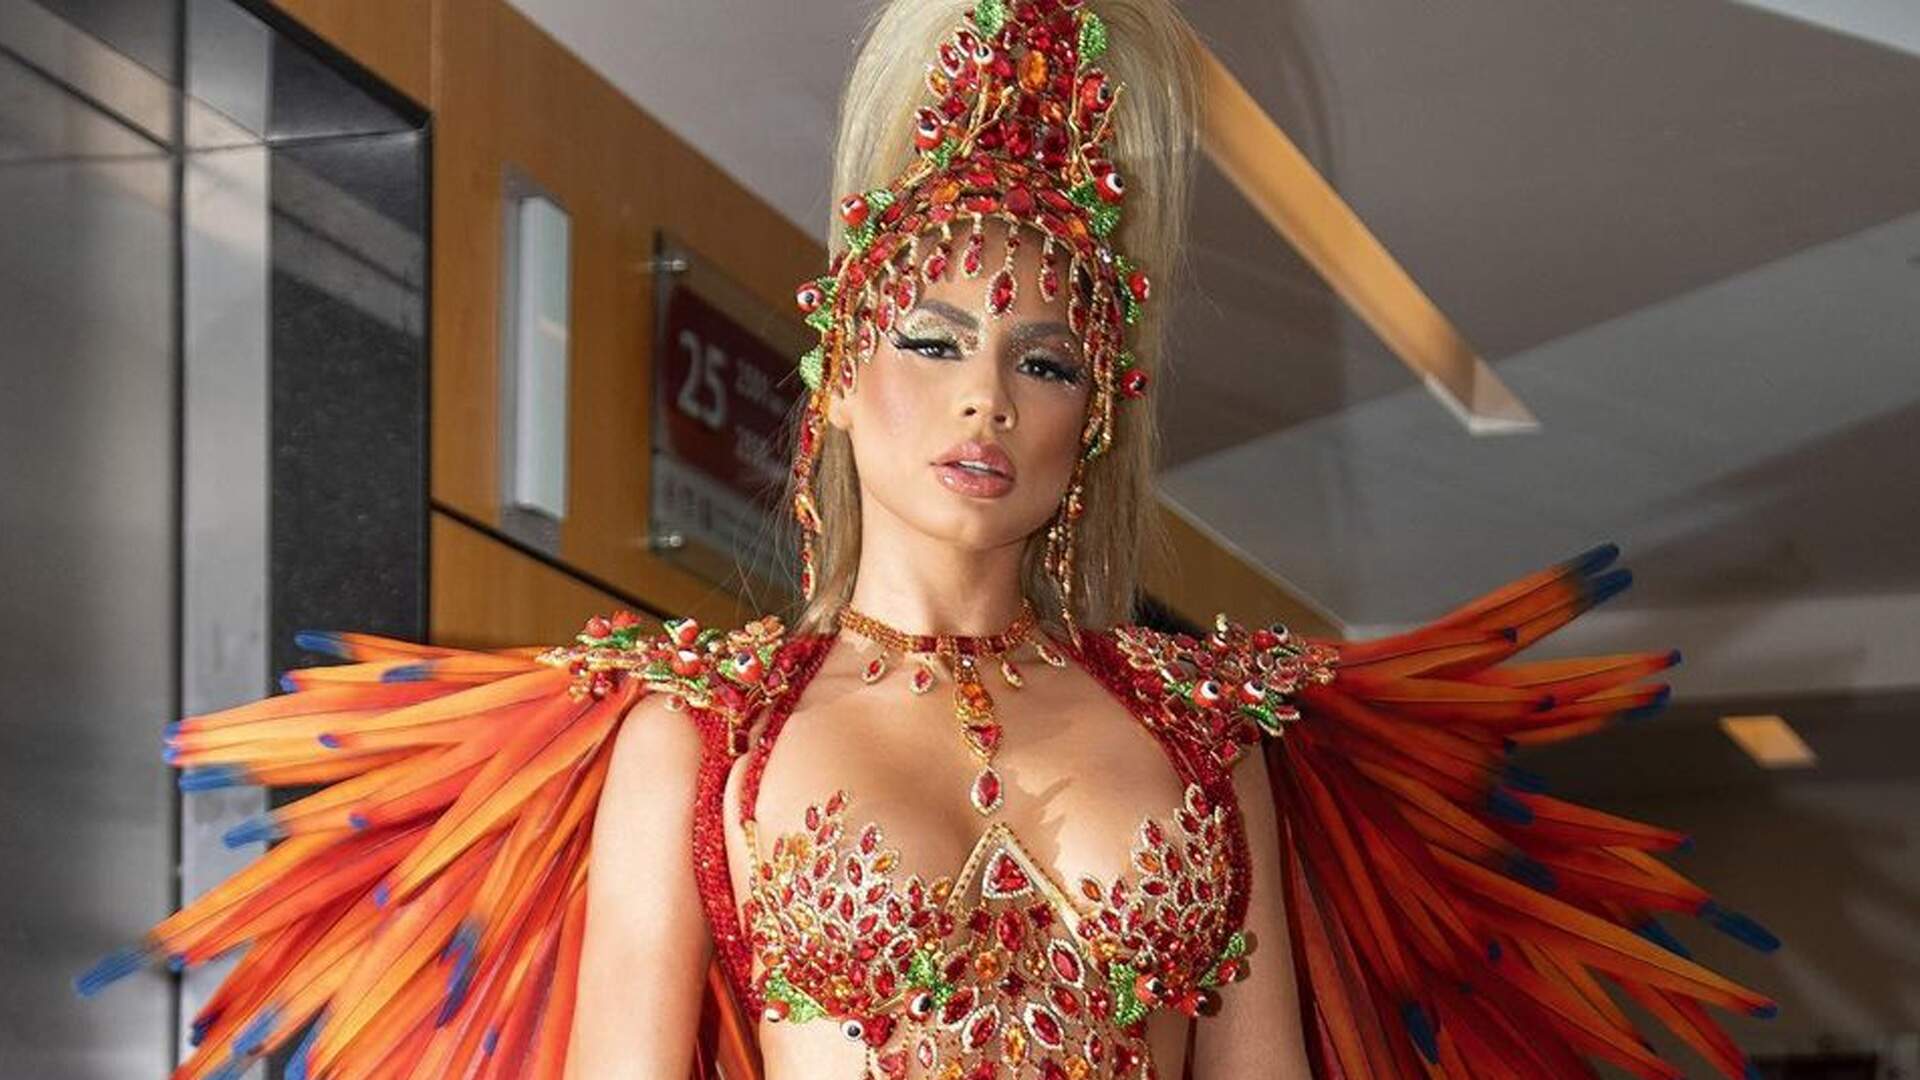 Fantasia de carnaval de Lexa surpreende nas redes sociais: “Babando até agora” - Metropolitana FM